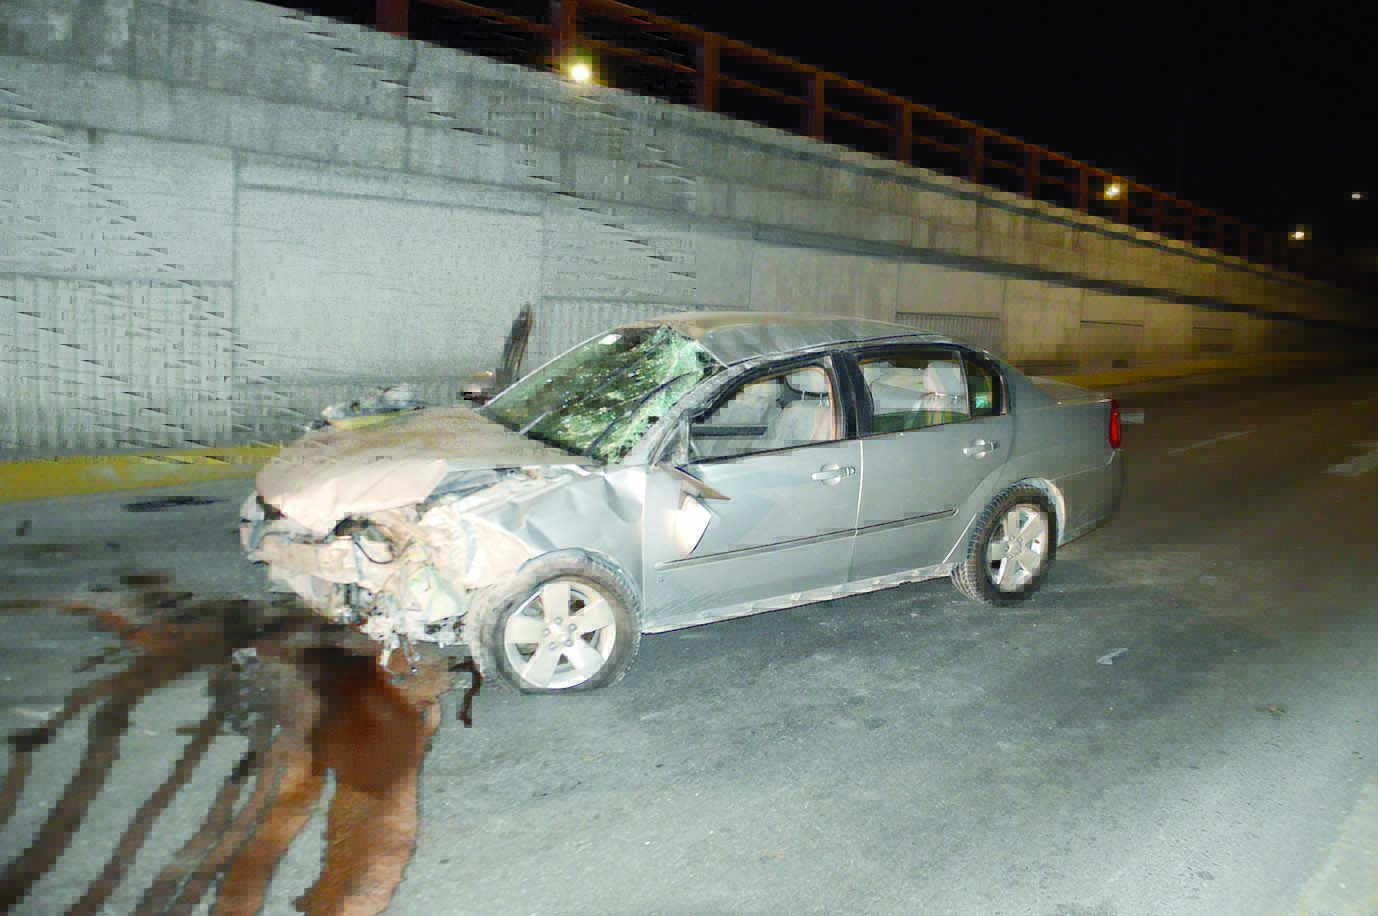 Vuelca auto al chocar puente; Conductor escapó